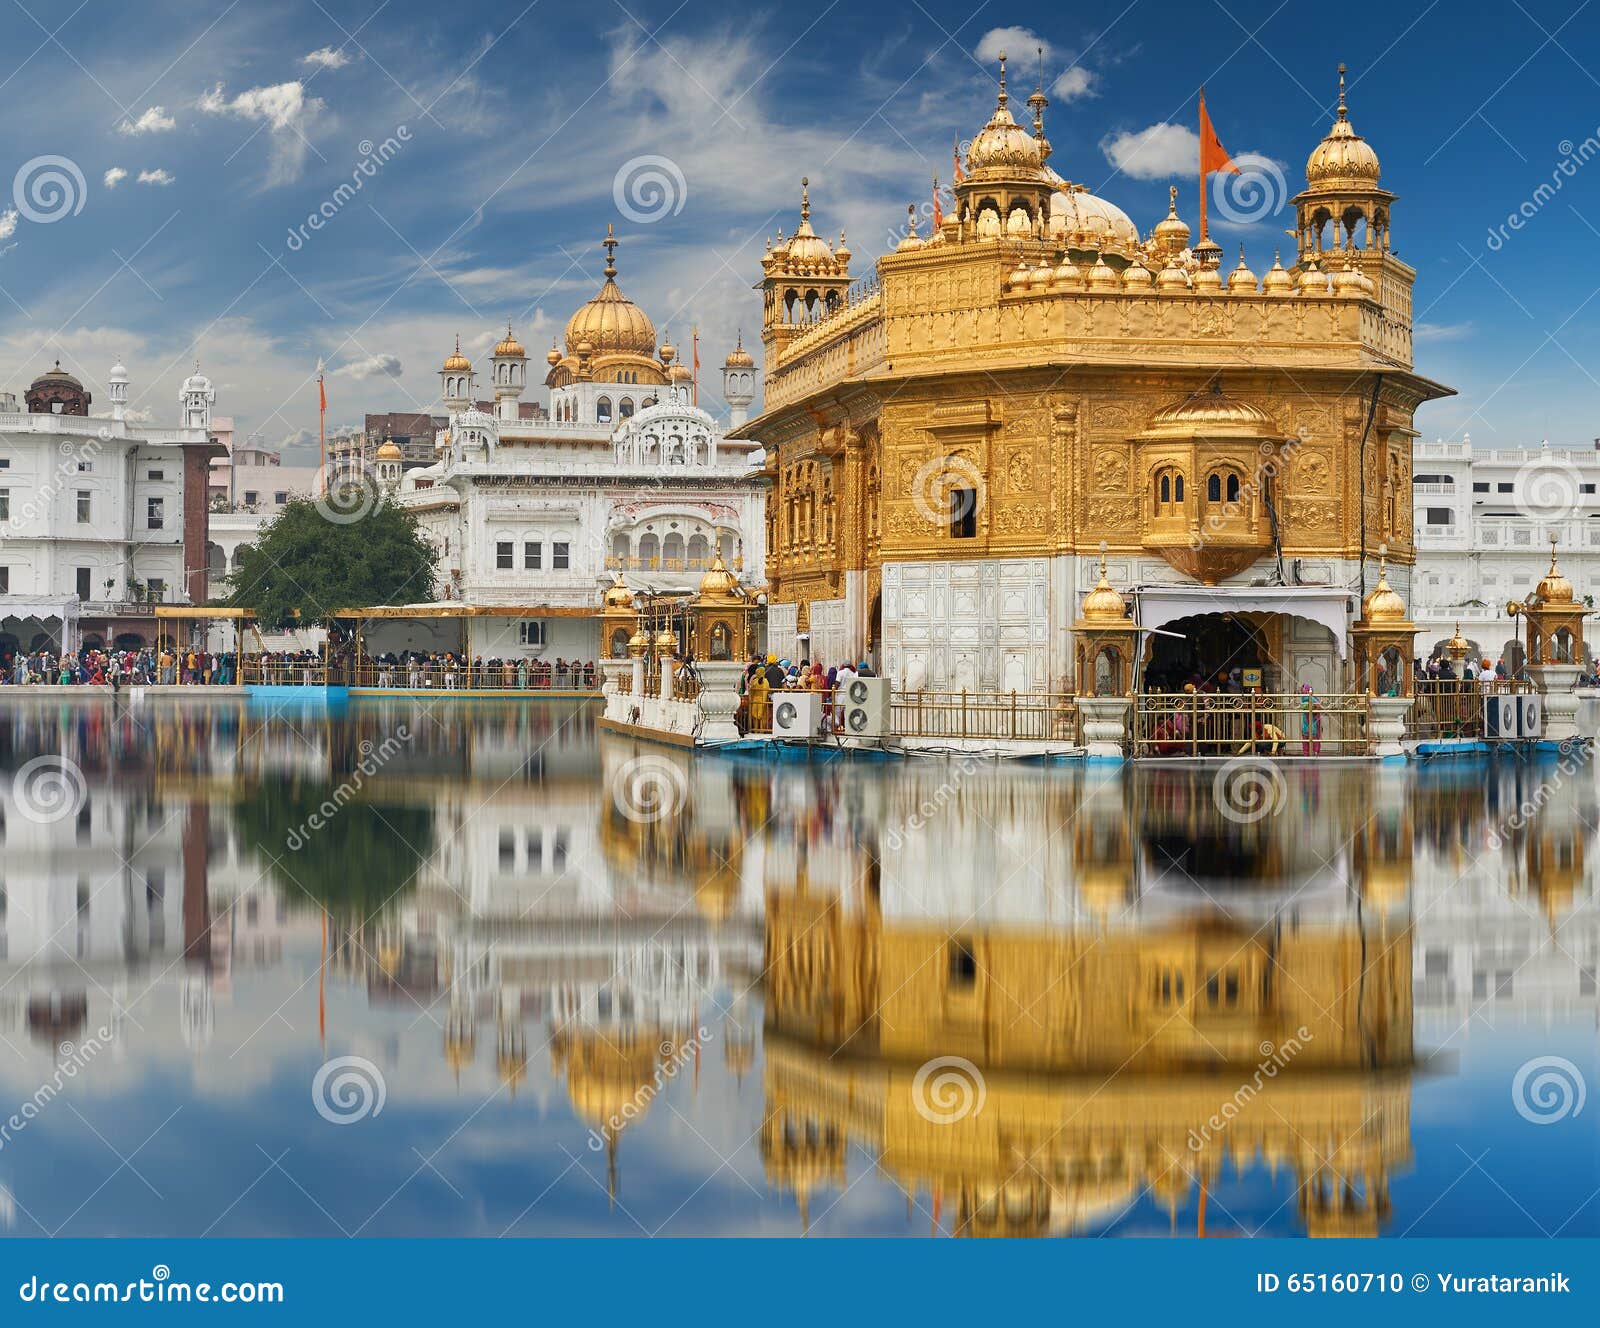 5 Places To Visit In Amritsar Punjab | Femina.in